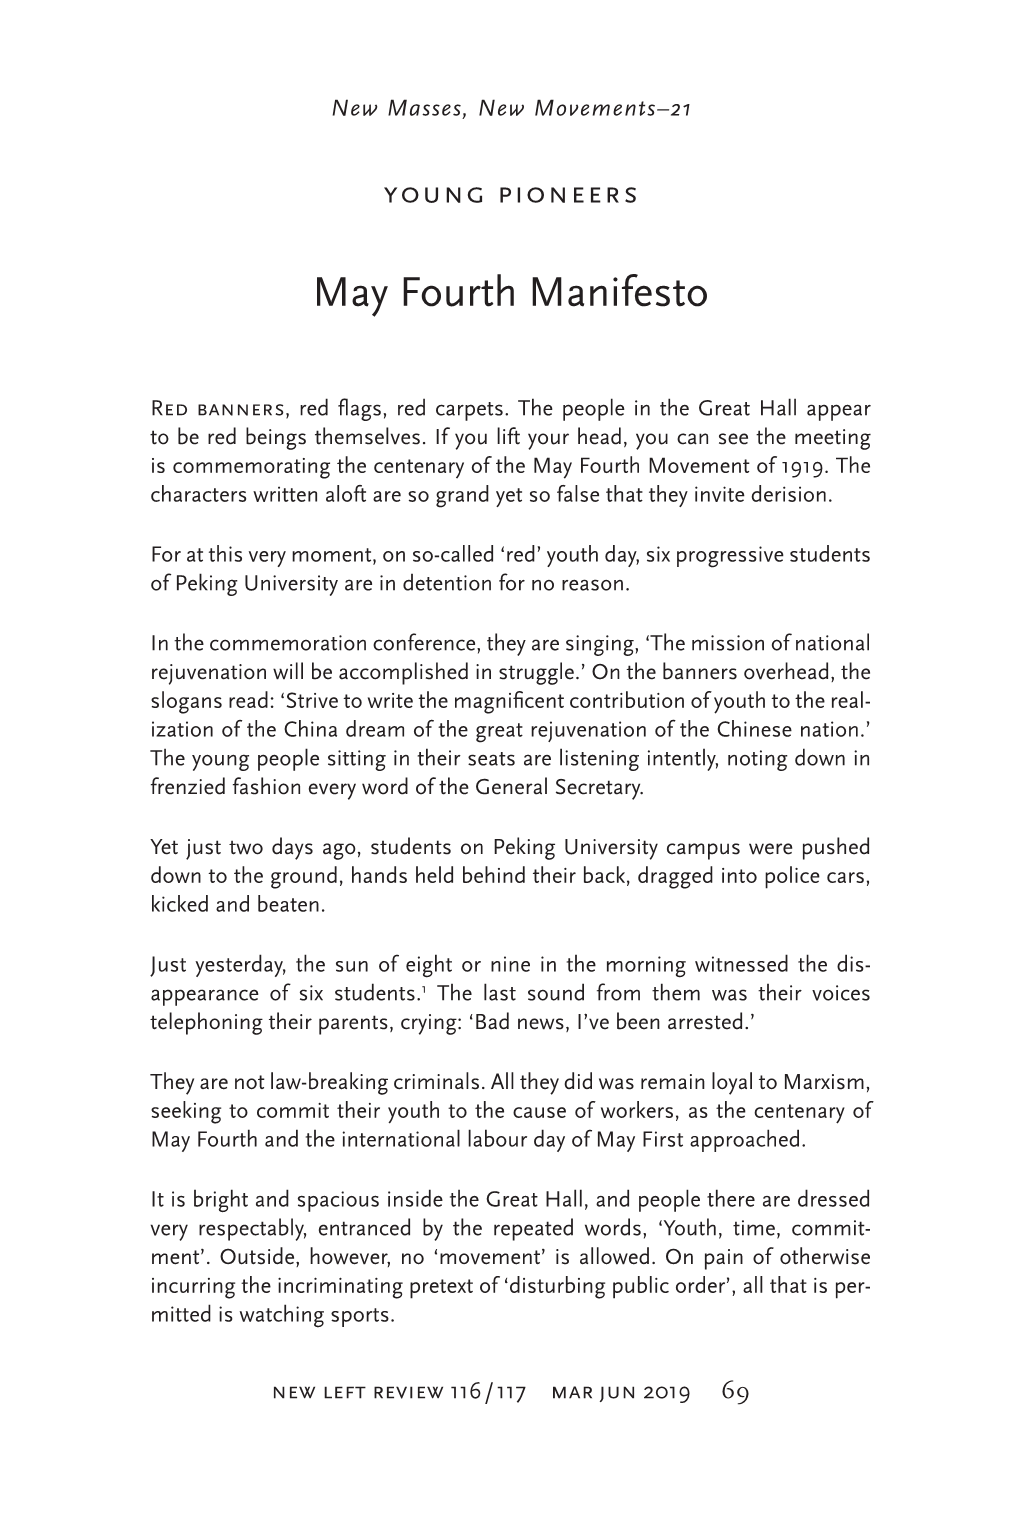 May Fourth Manifesto